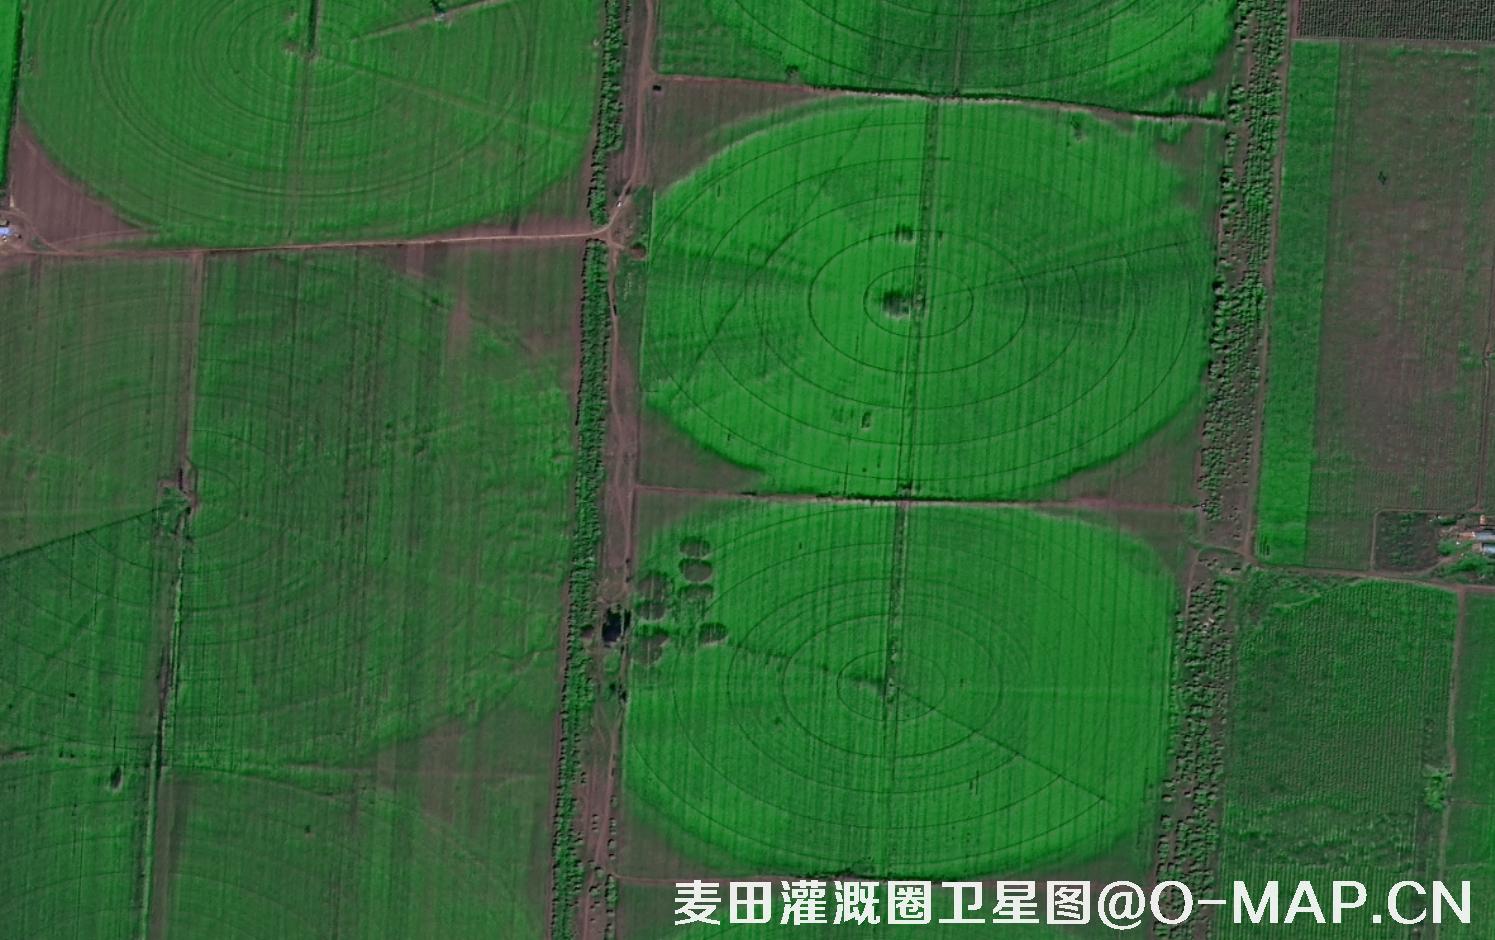 高分二号拍摄的麦田灌溉圈卫星图